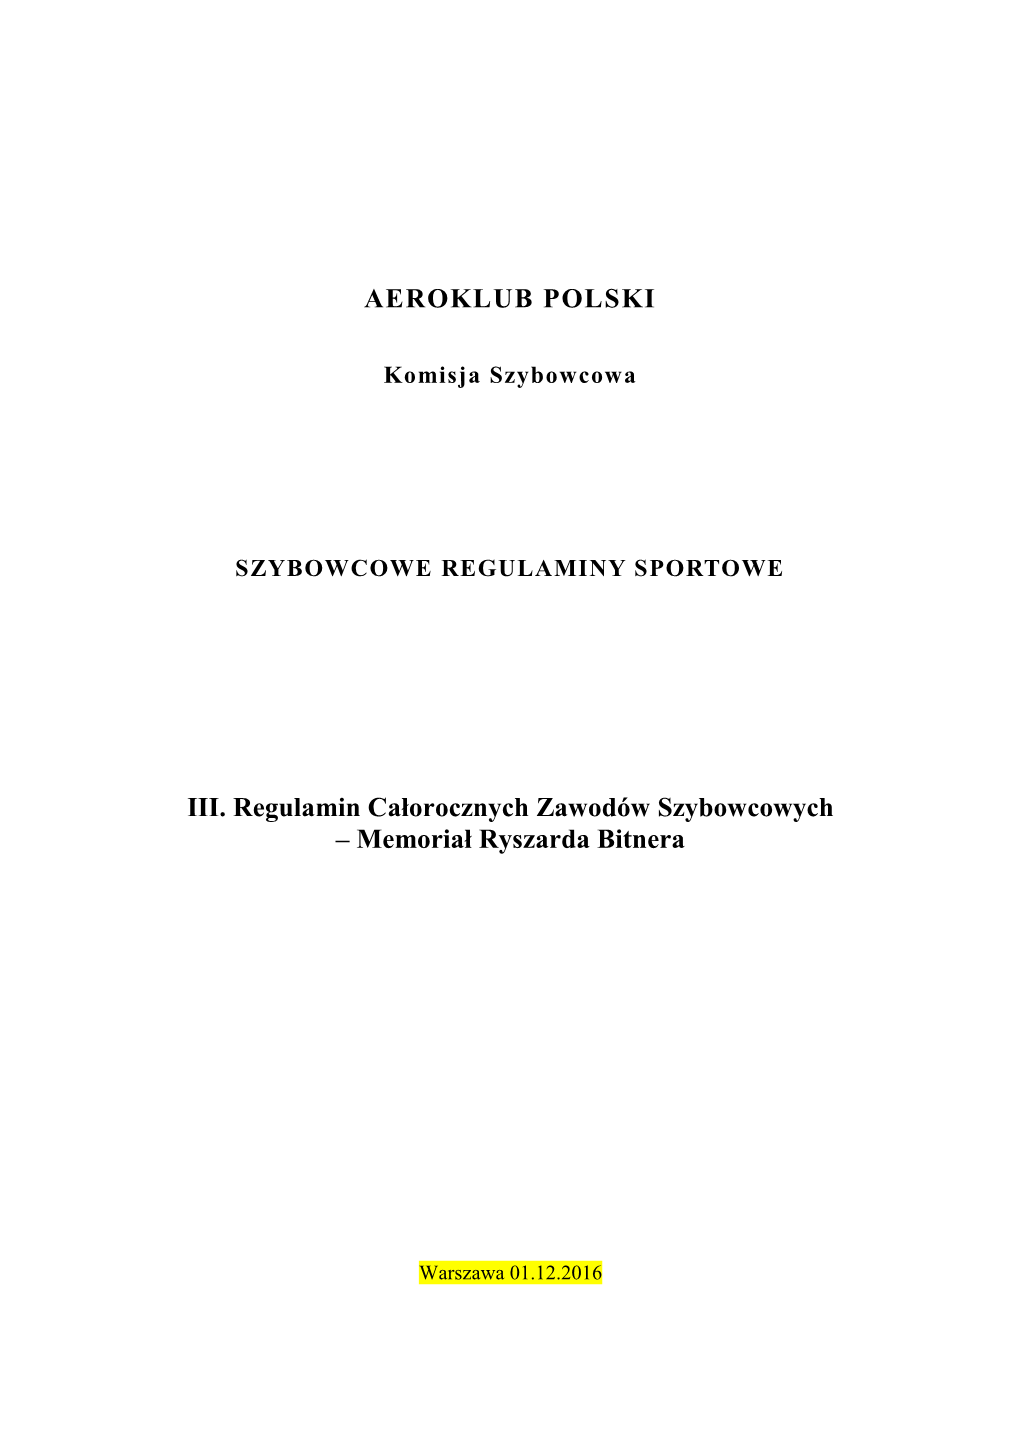 AEROKLUB POLSKI III. Regulamin Całorocznych